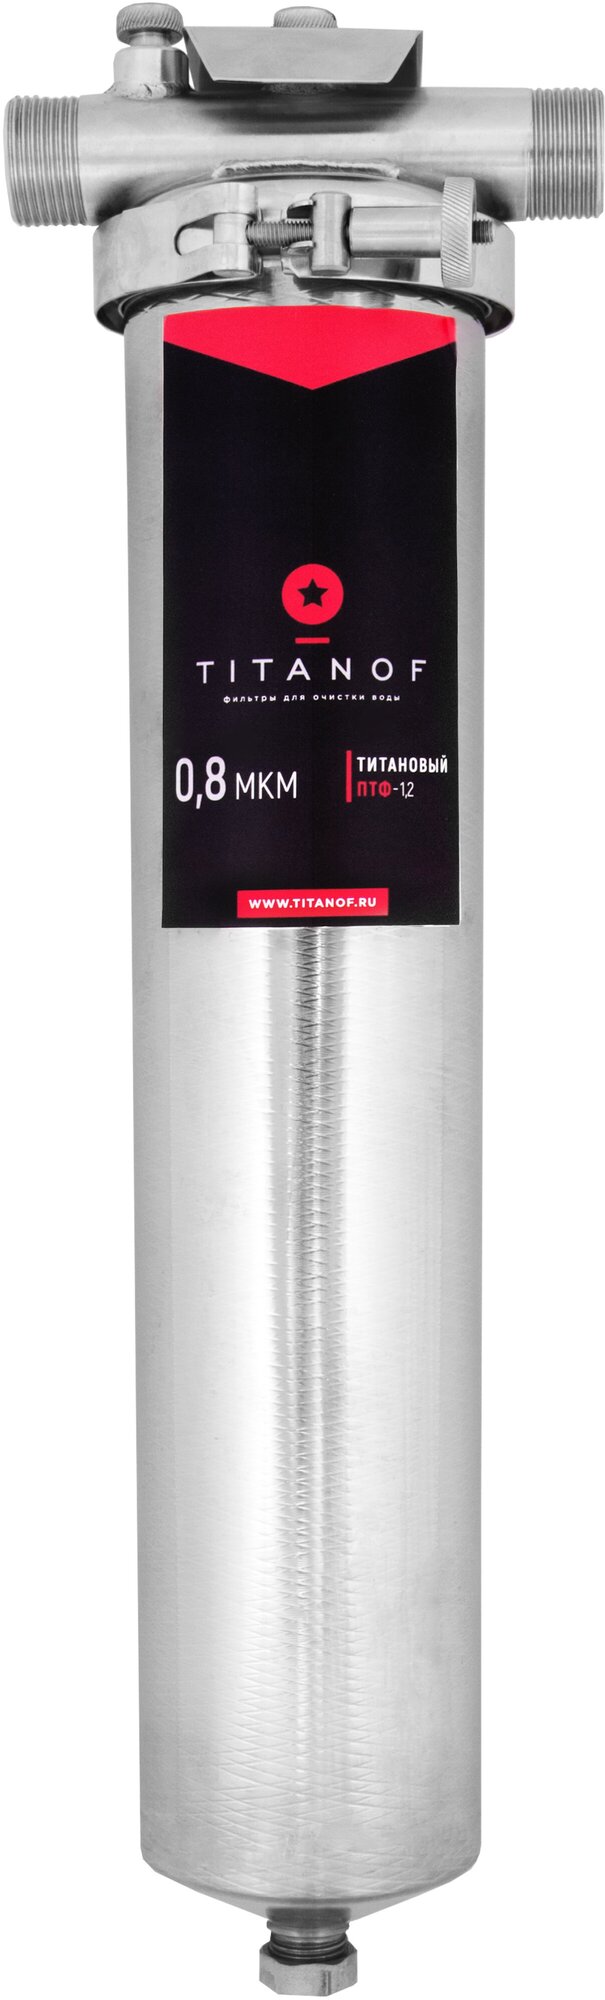 титановый фильтр TITANOF (титанов) птф 1.2 2000 л/час